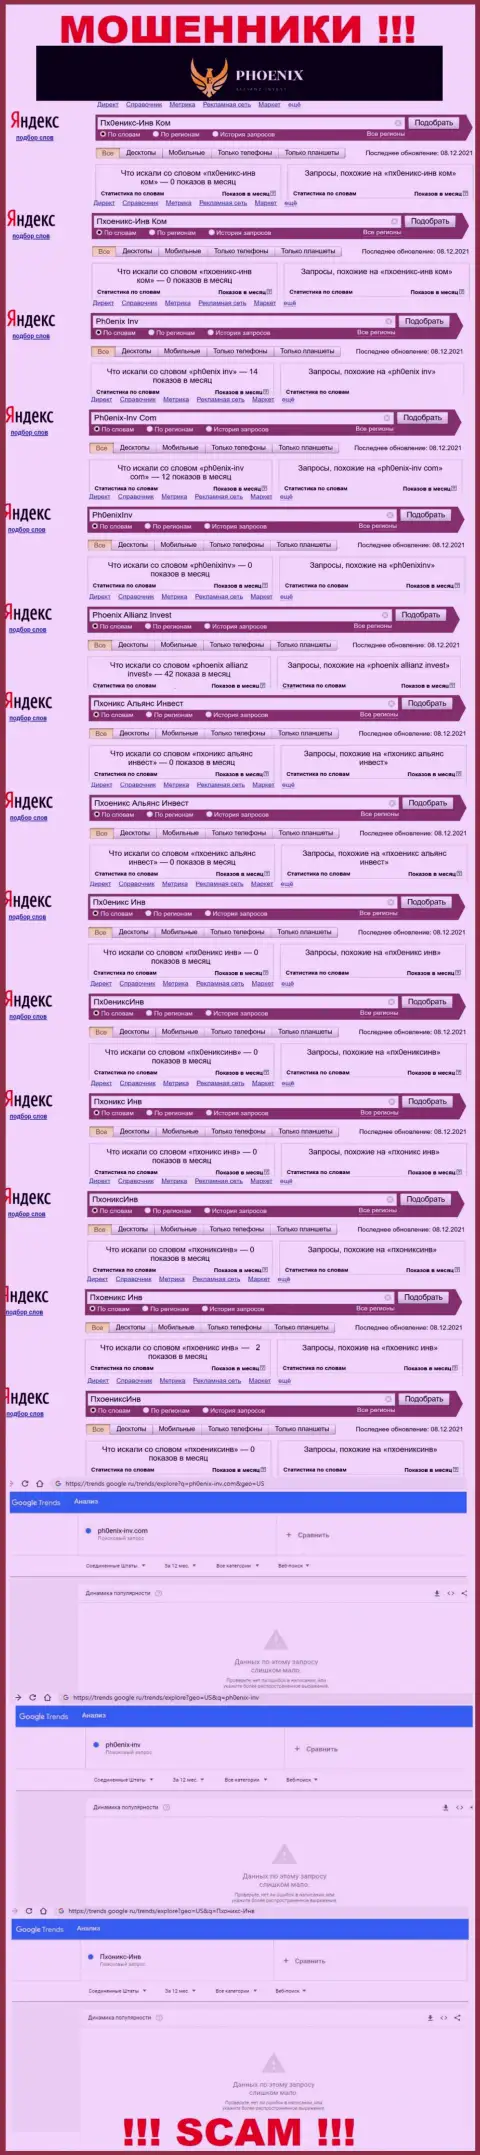 Скрин результатов онлайн-запросов по мошеннической конторе Ph0enix-Inv Com